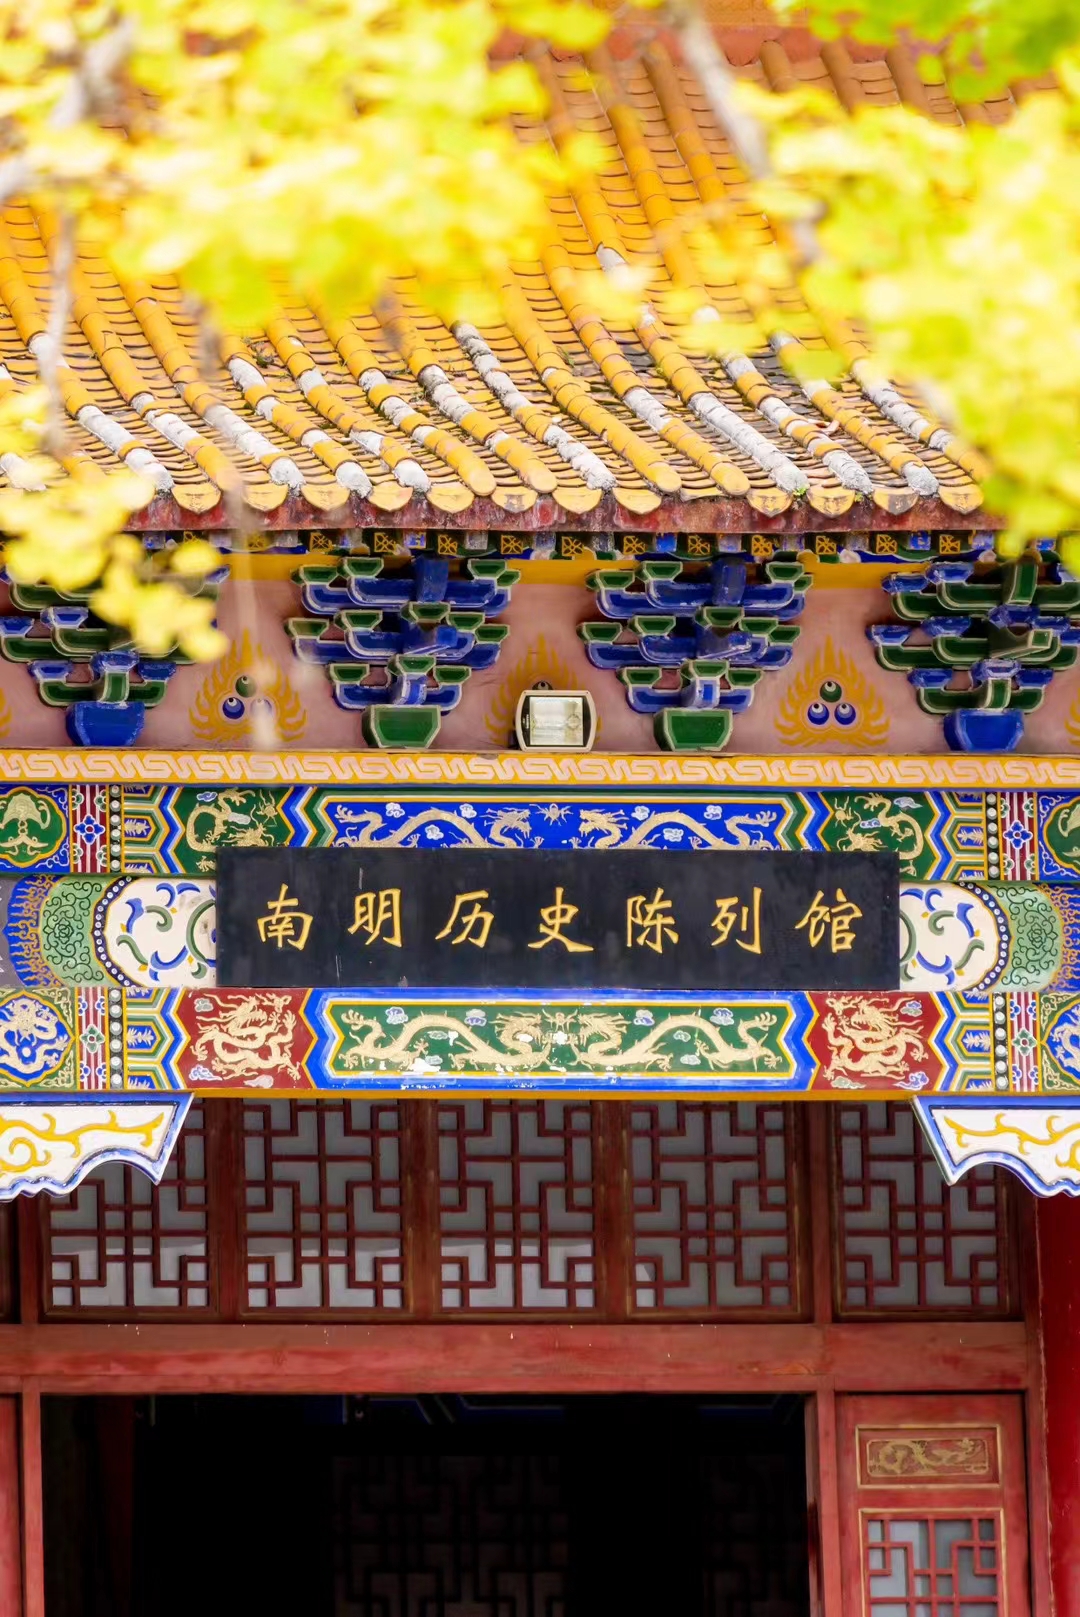 贵州安龙:南明历史博物馆成了外界了解安龙的一个形象窗口